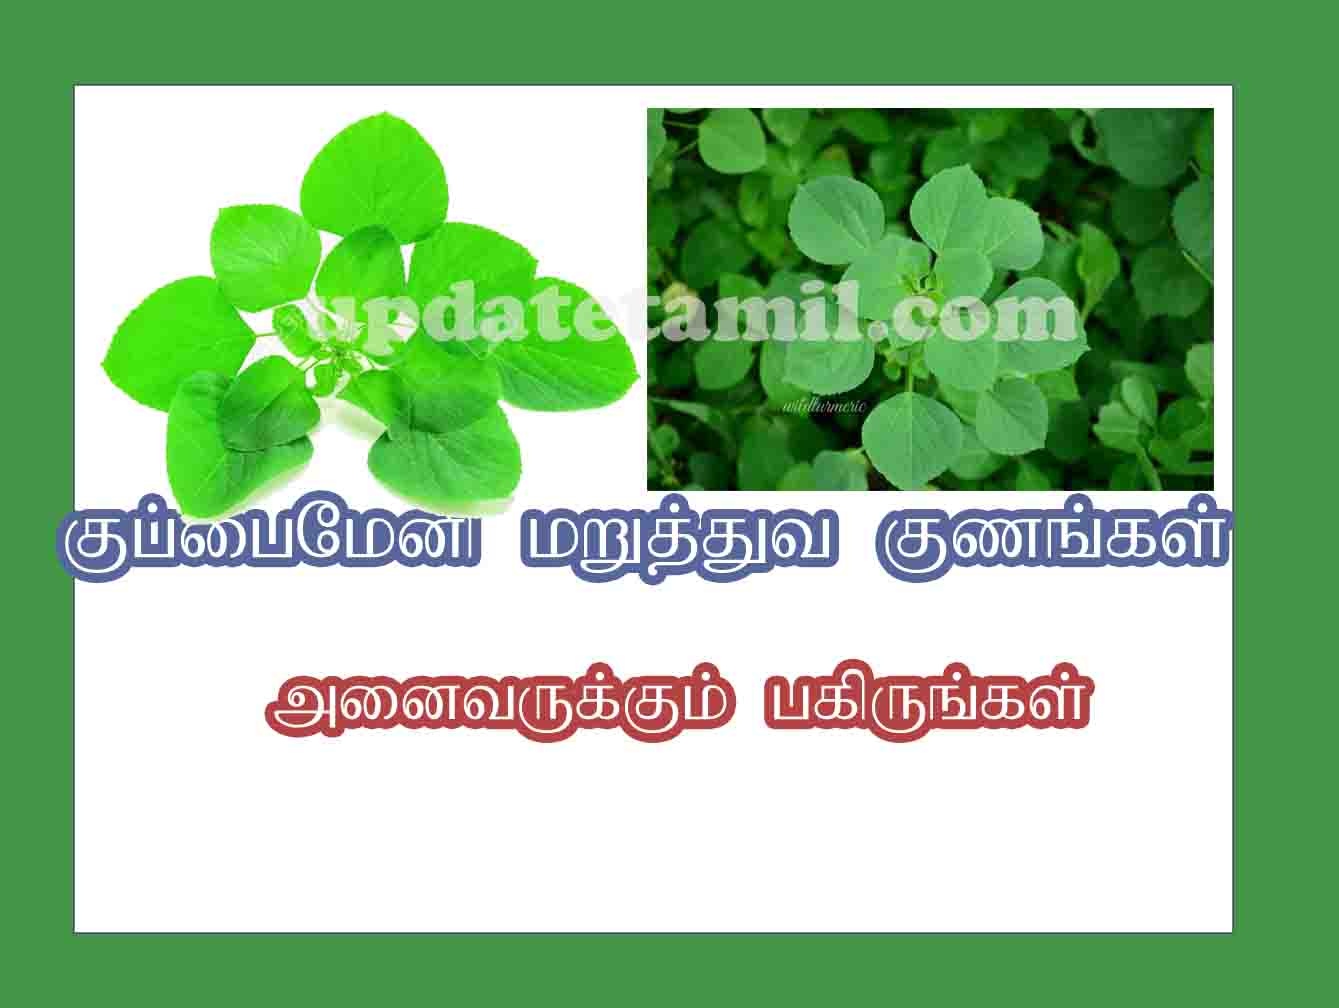 குப்பைமேனி பயன்கள் kuppaimeni uses in tamil